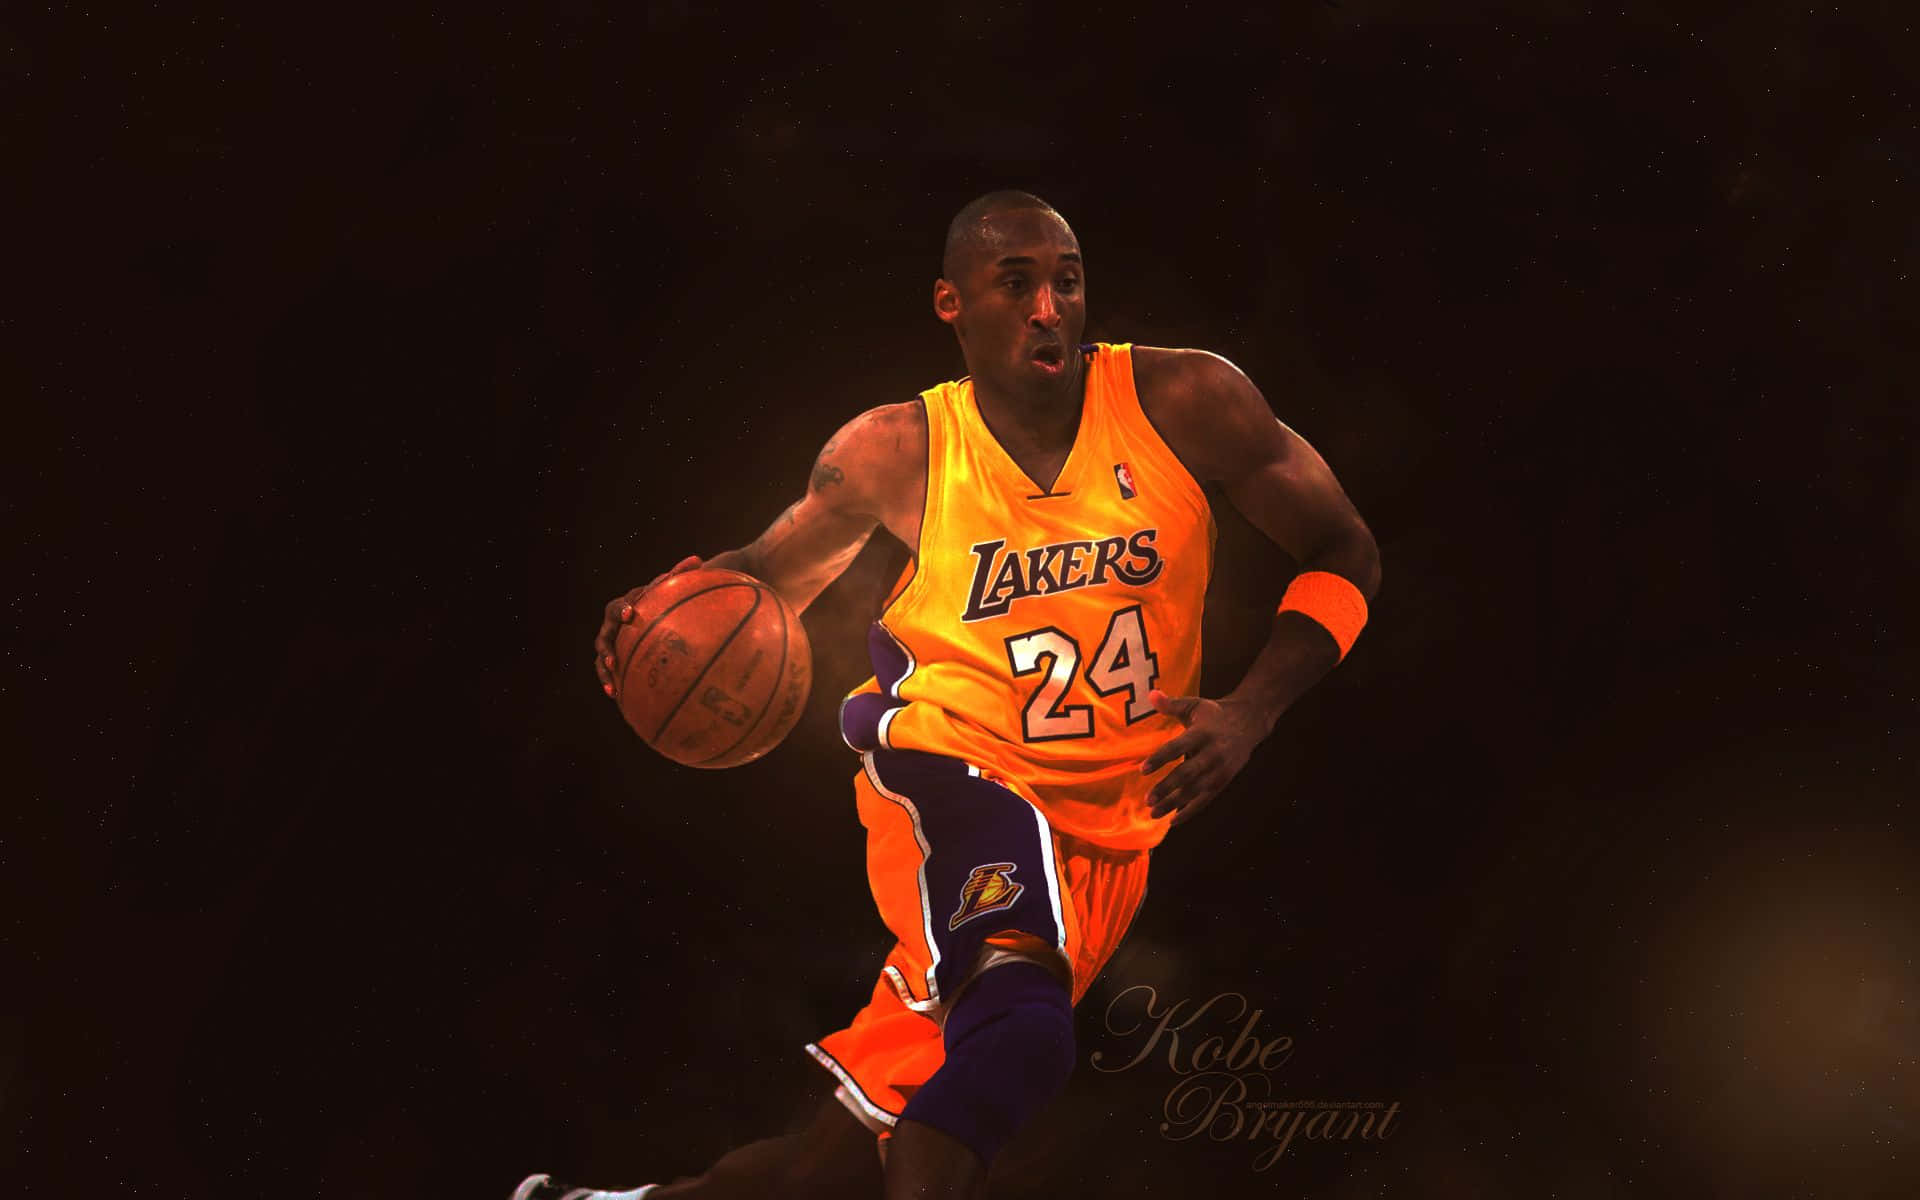 Zurfeier Der Basketball-großartigkeit Von Kobe Bryant